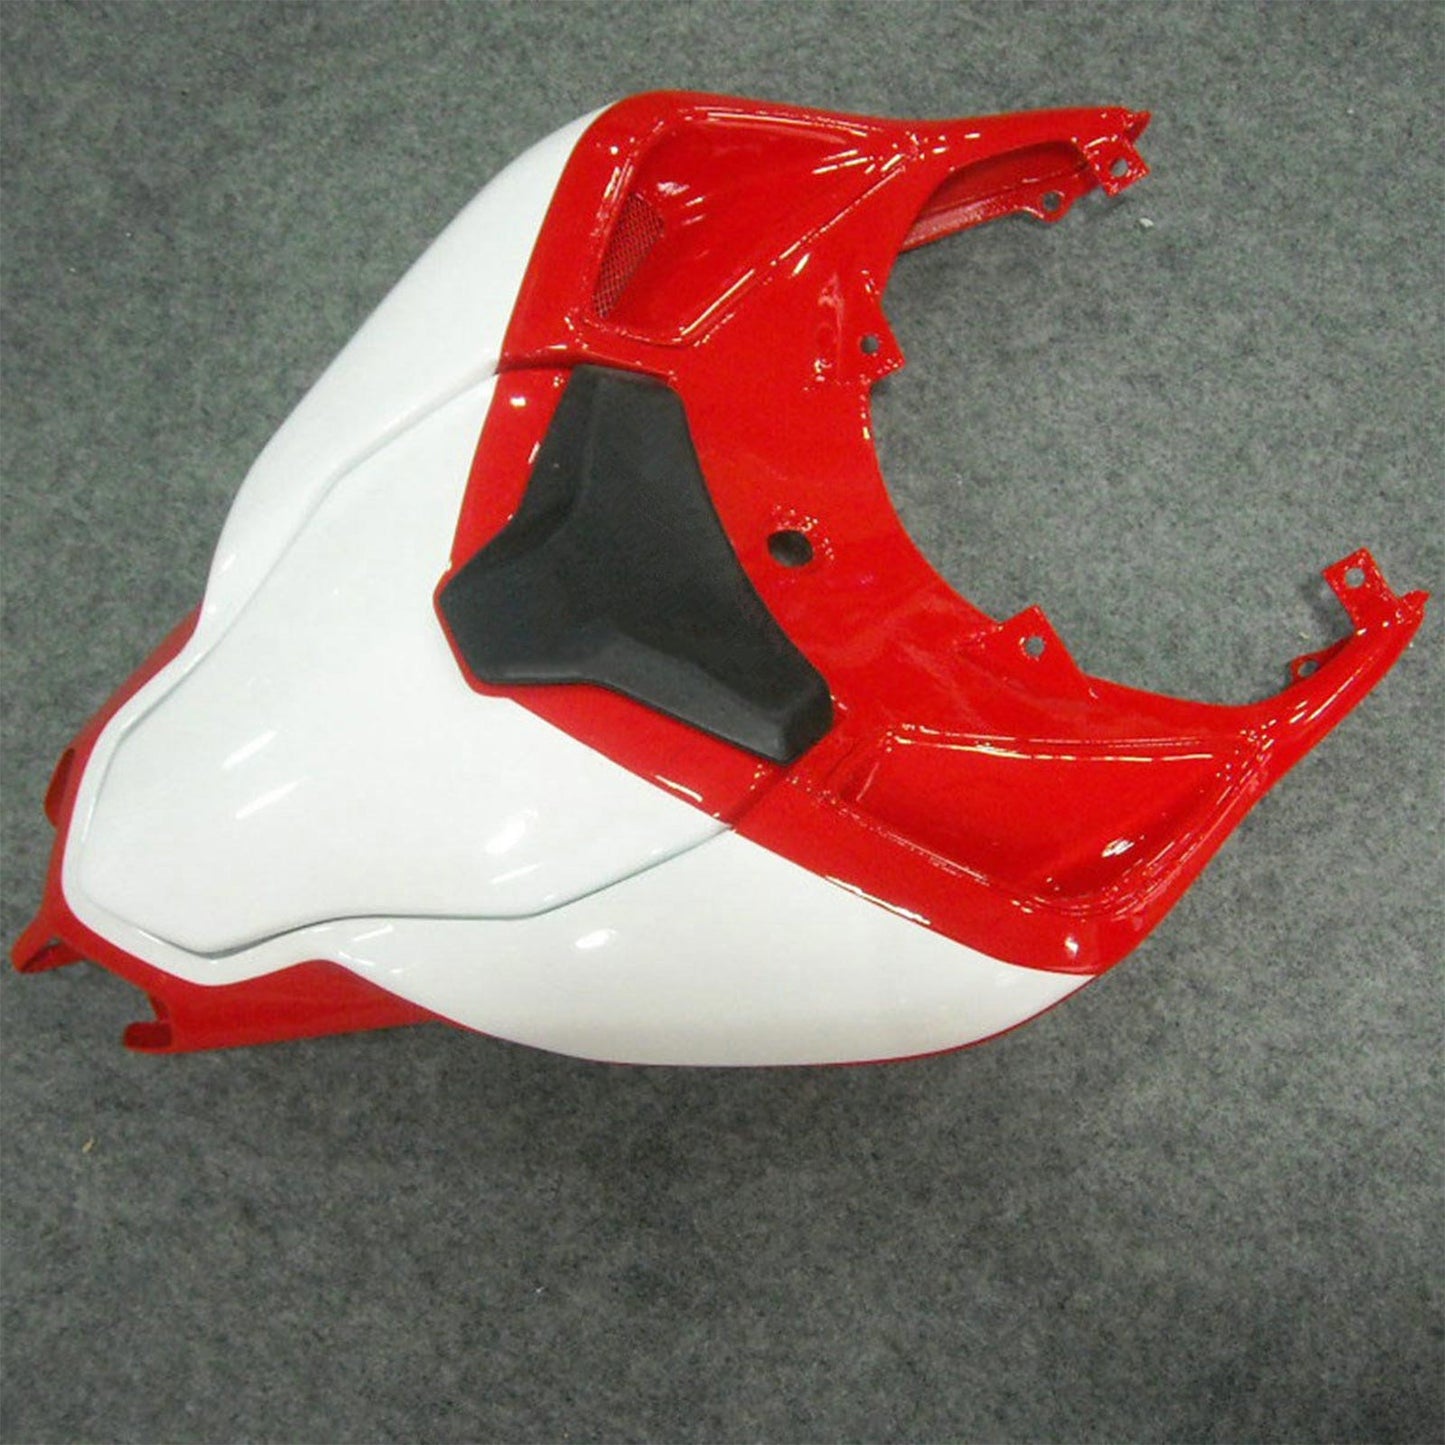 Amotopart 2007-2012 Ducati 1098 848 1198 Kit di rivestimento rosso